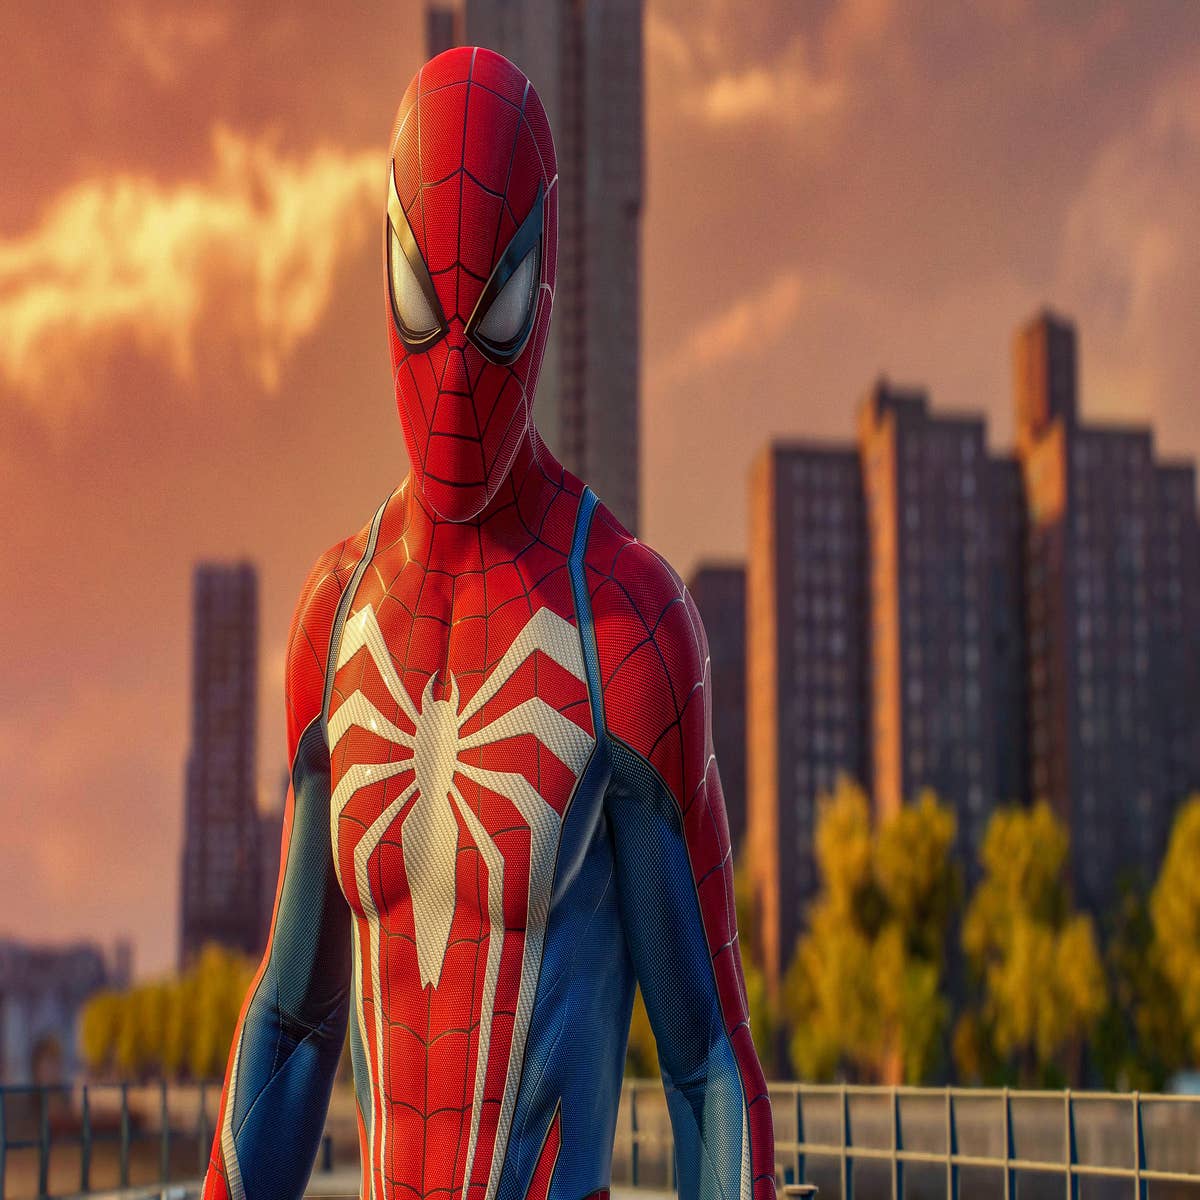 Quais os melhores jogos do Spider-Man, segundo a crítica?